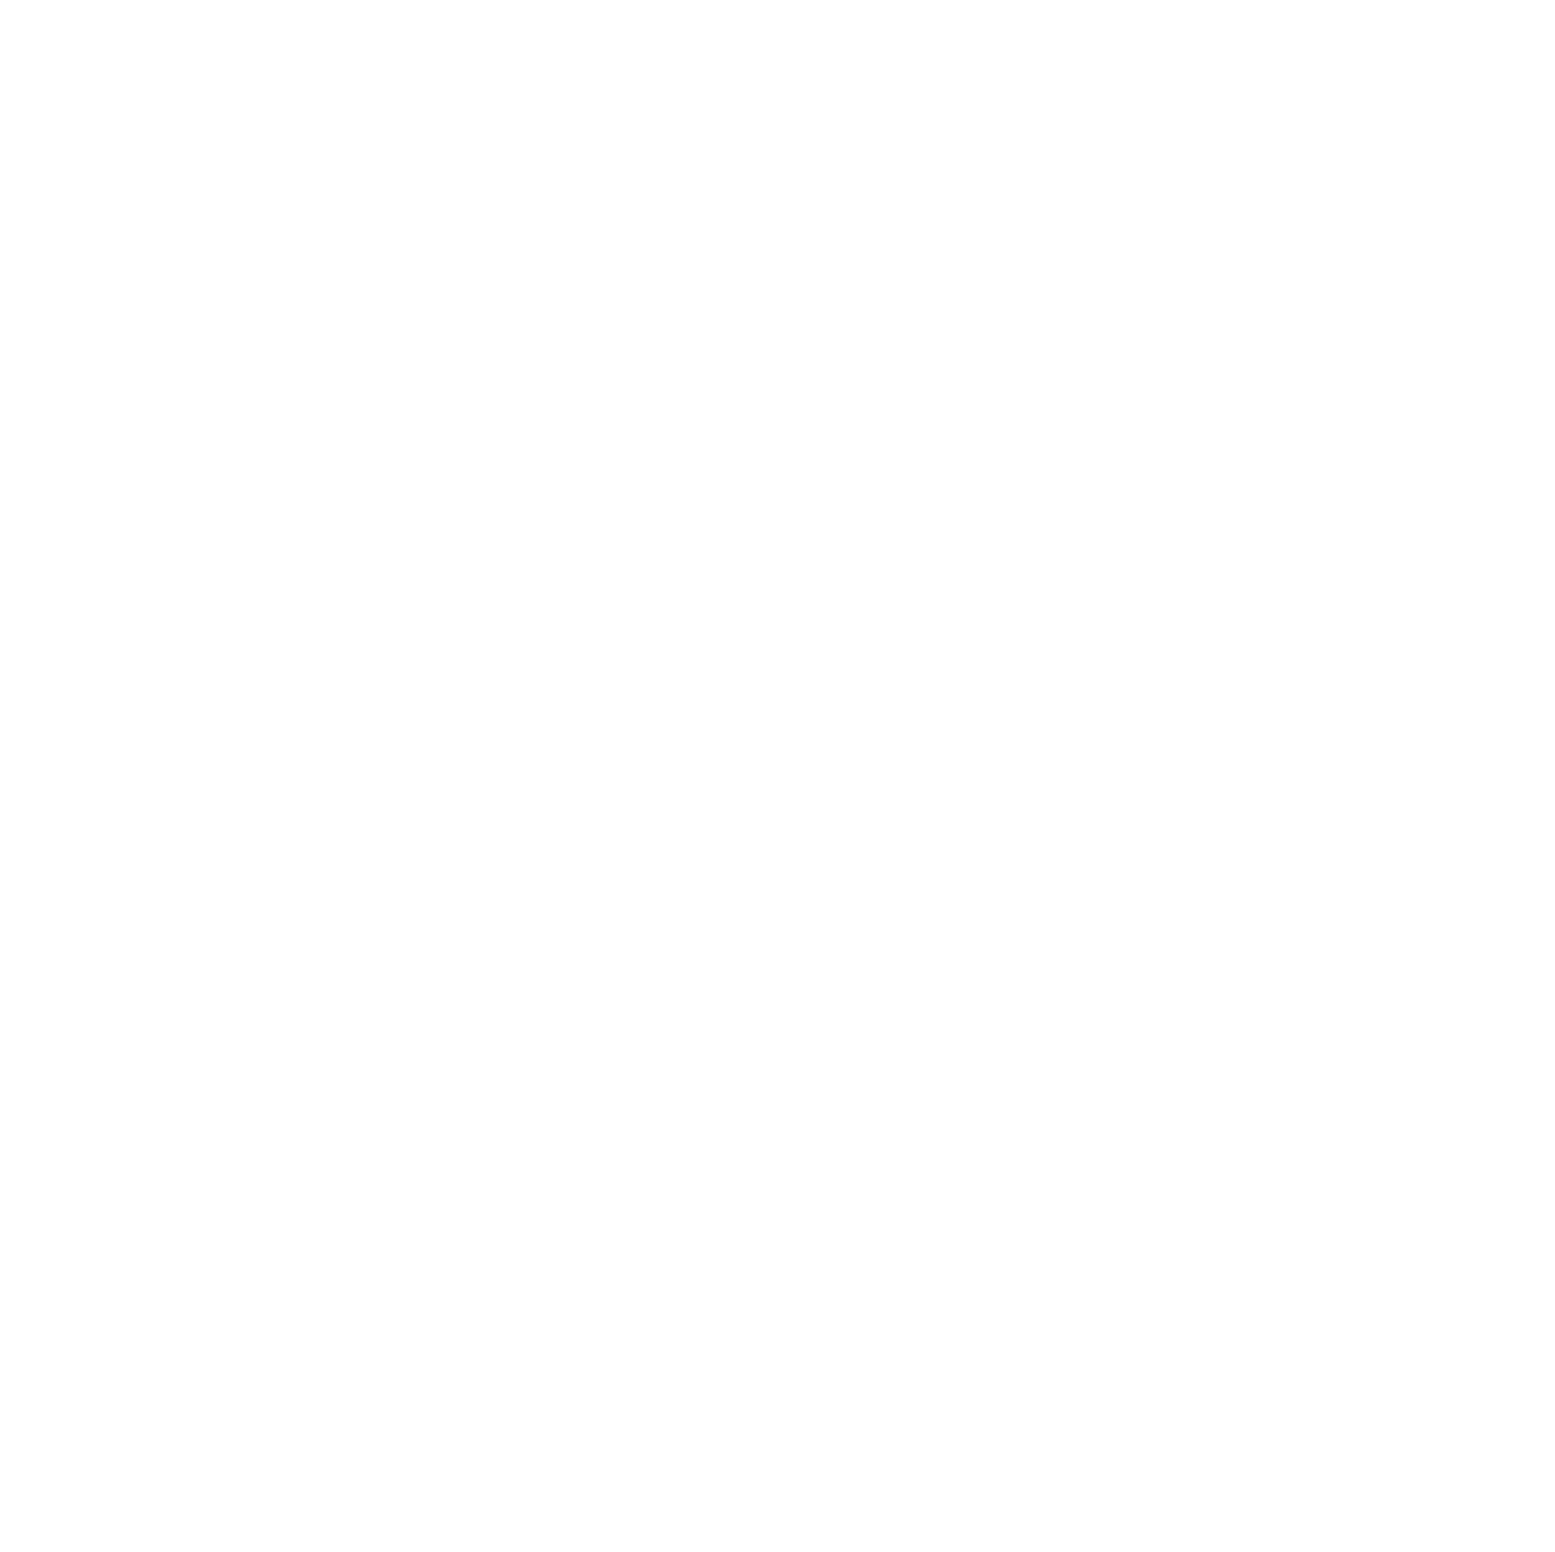 Flex logo pour fonds sombres (PNG transparent)